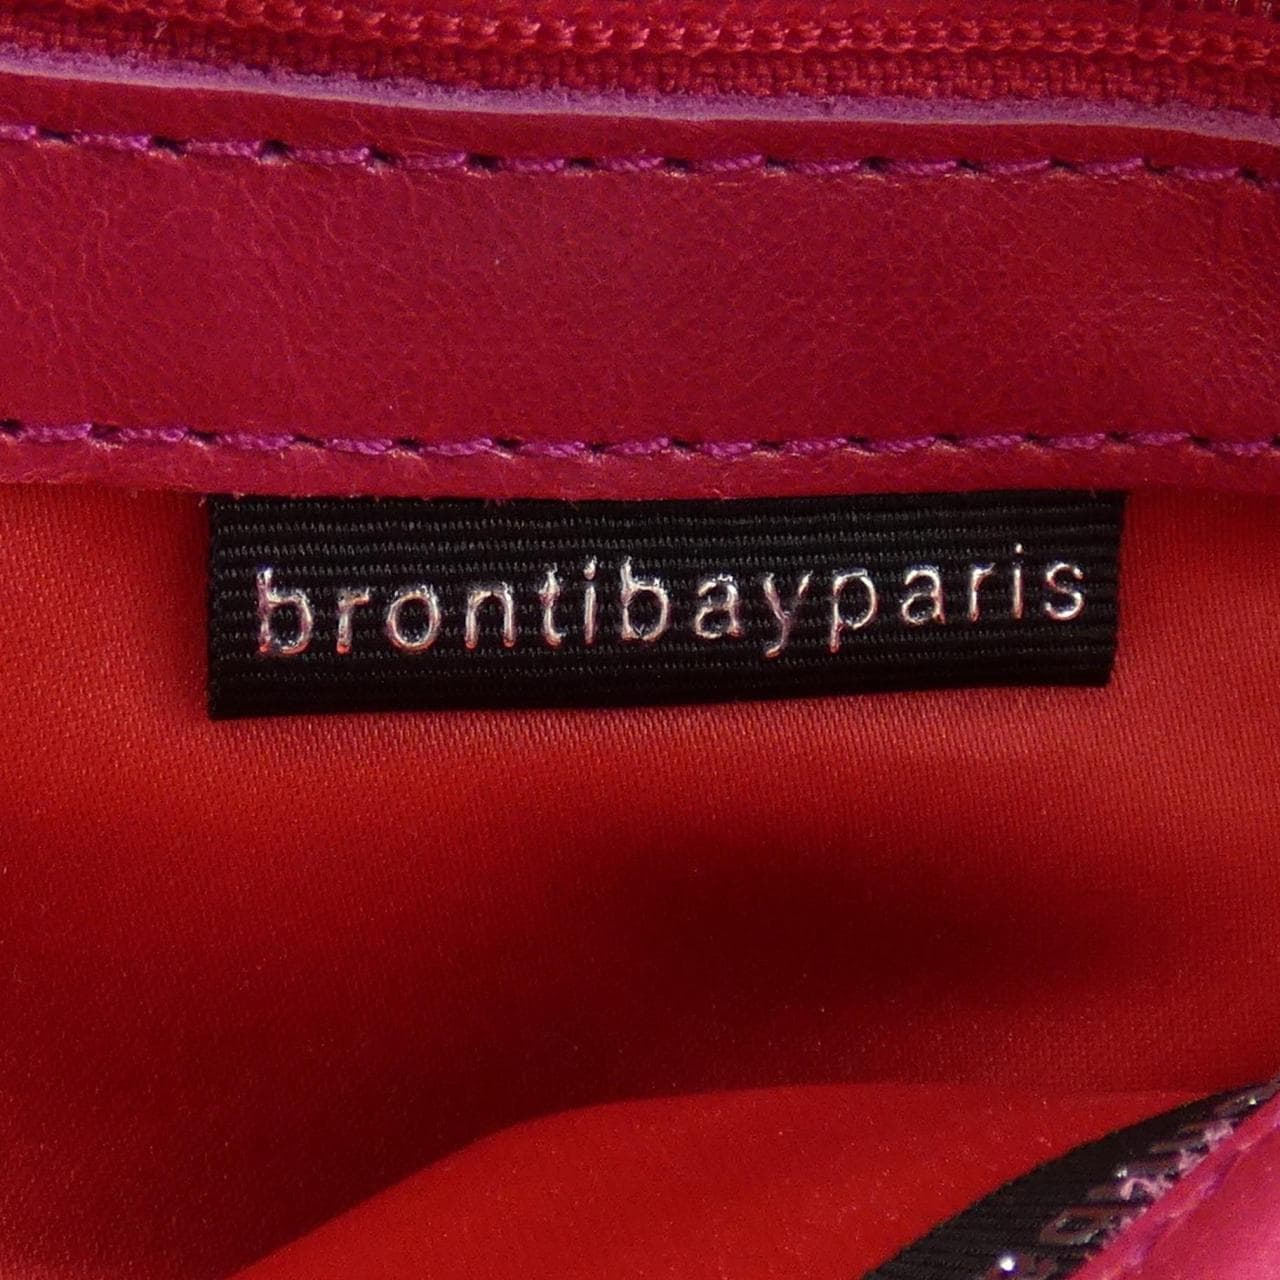 brontibayparis BAG